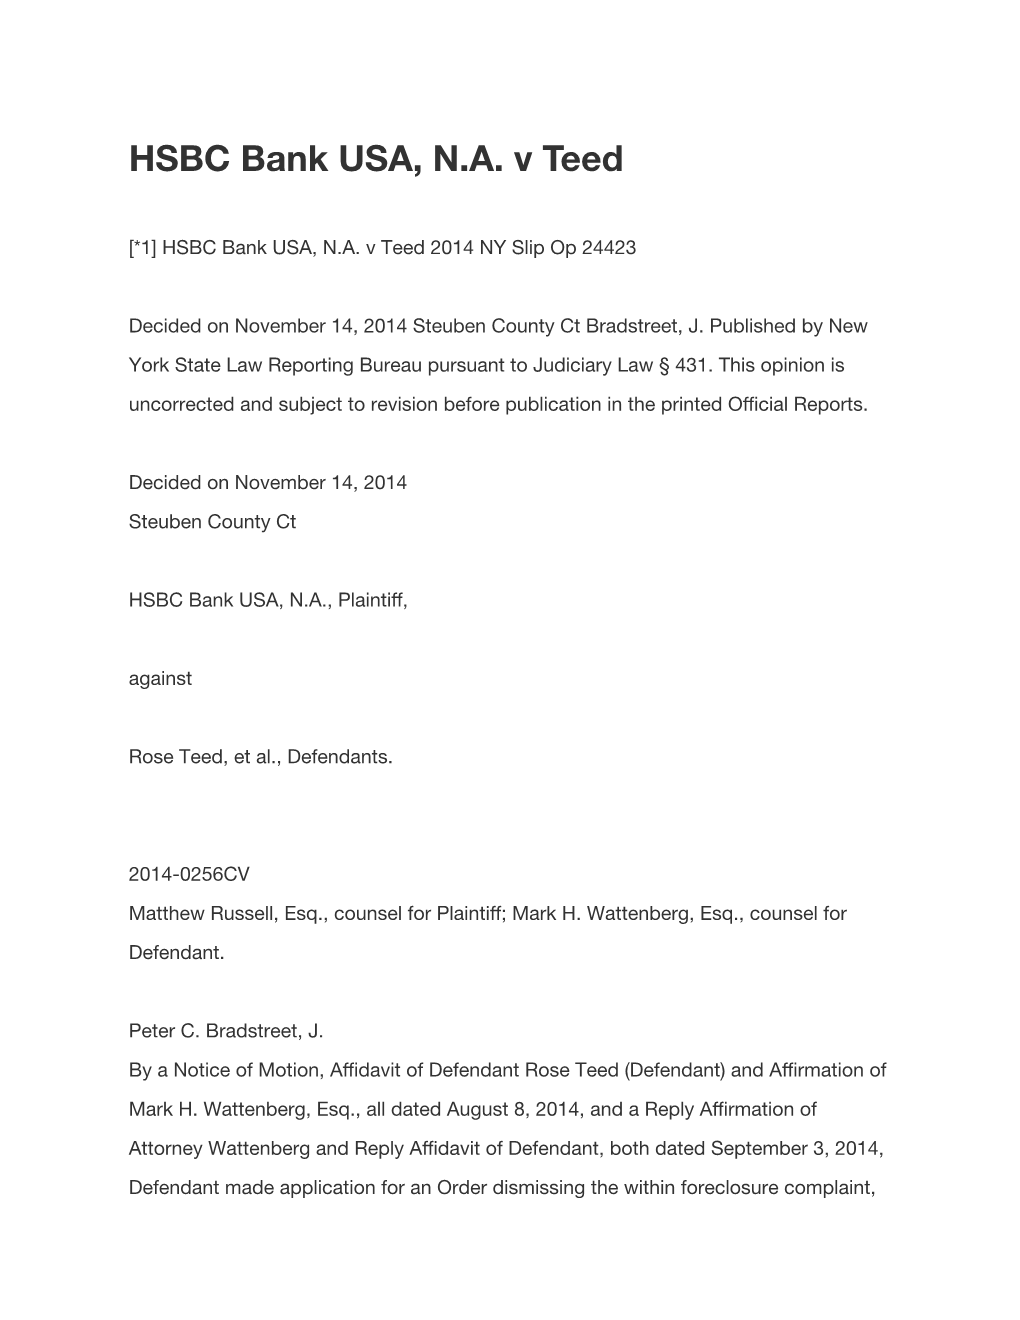 HSBC Bank USA, NA V Teed